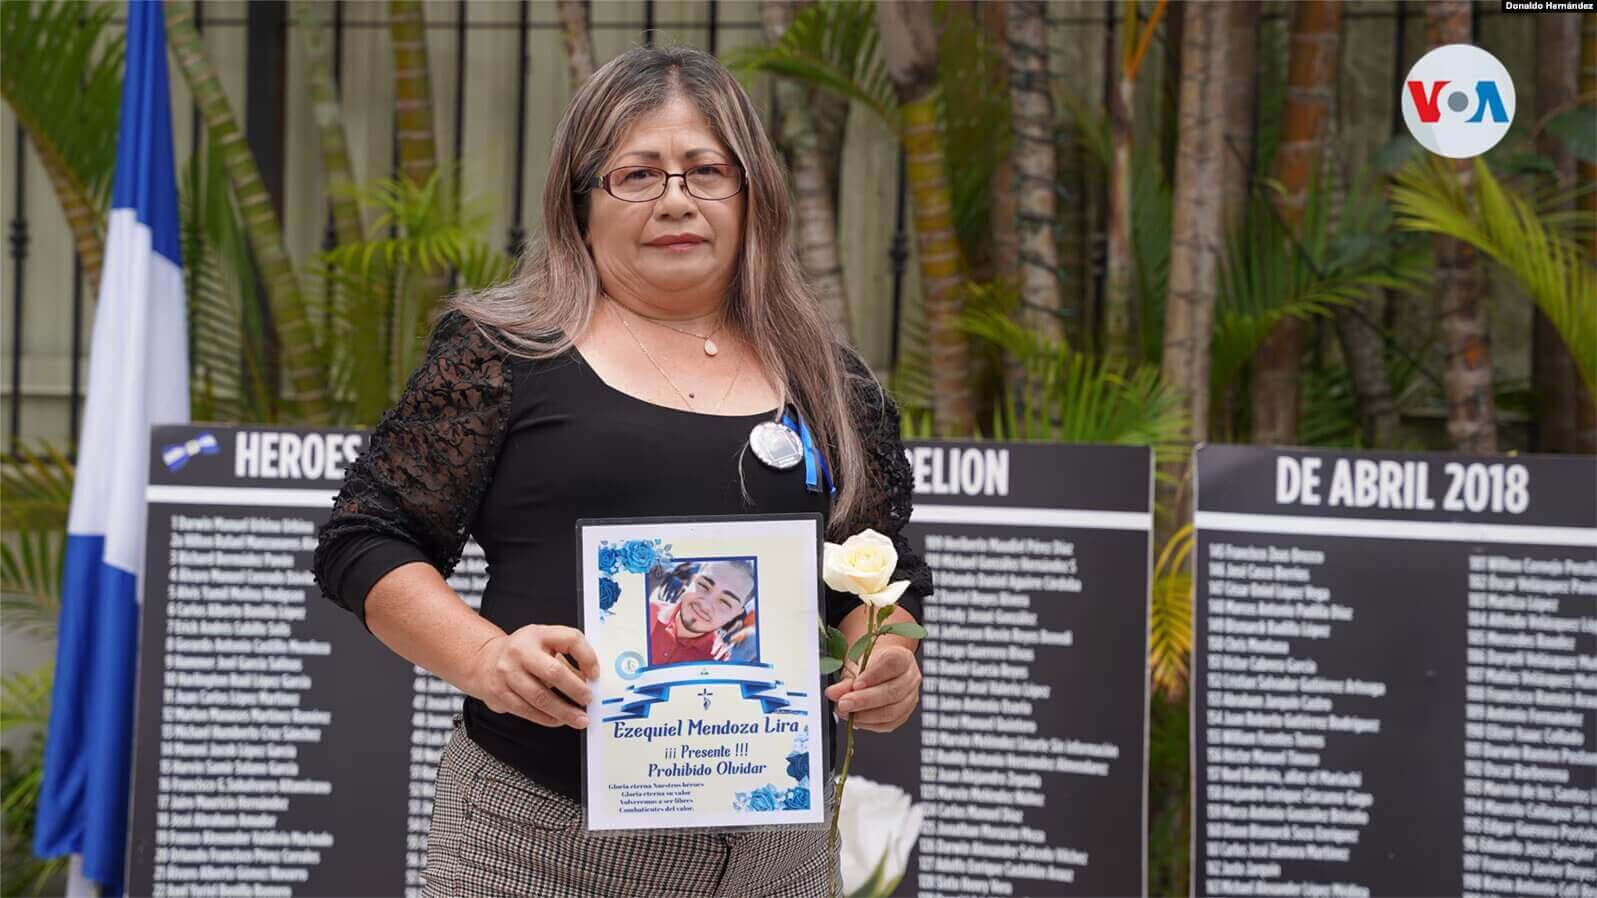 Una madre nicaragüense sostiene el cartel de su hijo asesinado en una actividad en San José, Costa Rica. [Foto: Donaldo Hernández, VOA]